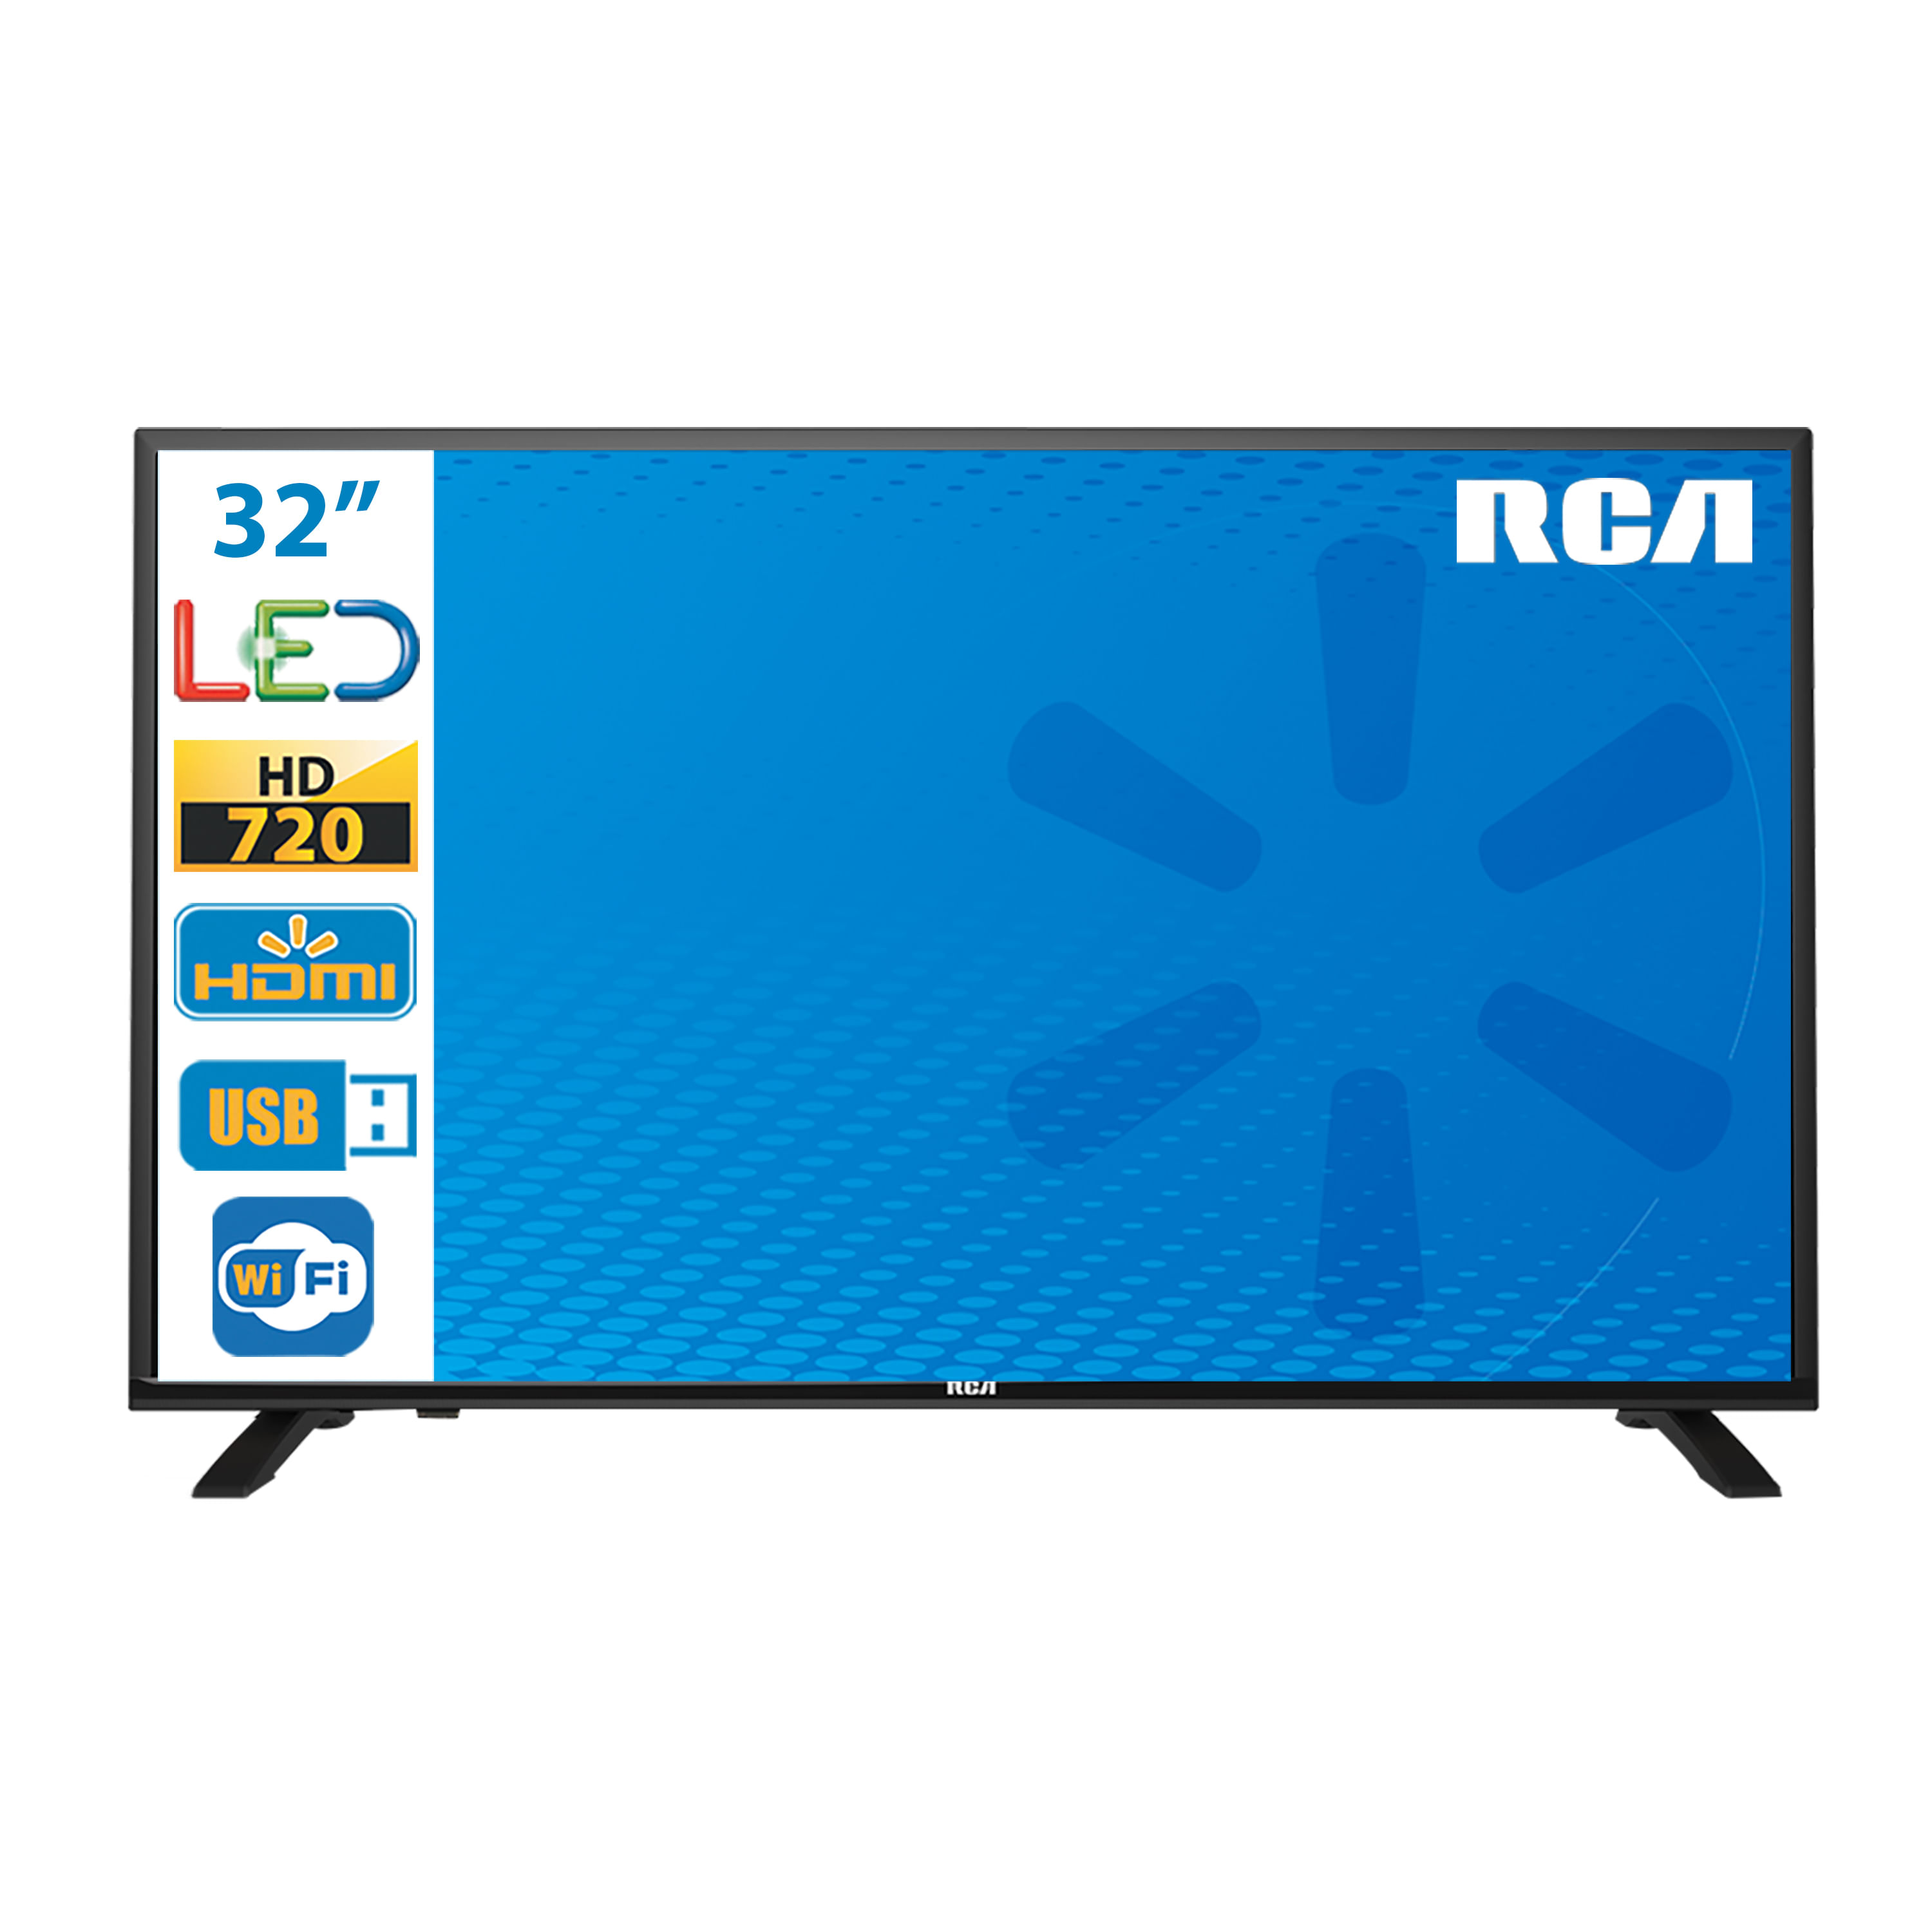  RCA Televisor de pantalla plana LED HD 720p de 32 pulgadas :  Electrónica